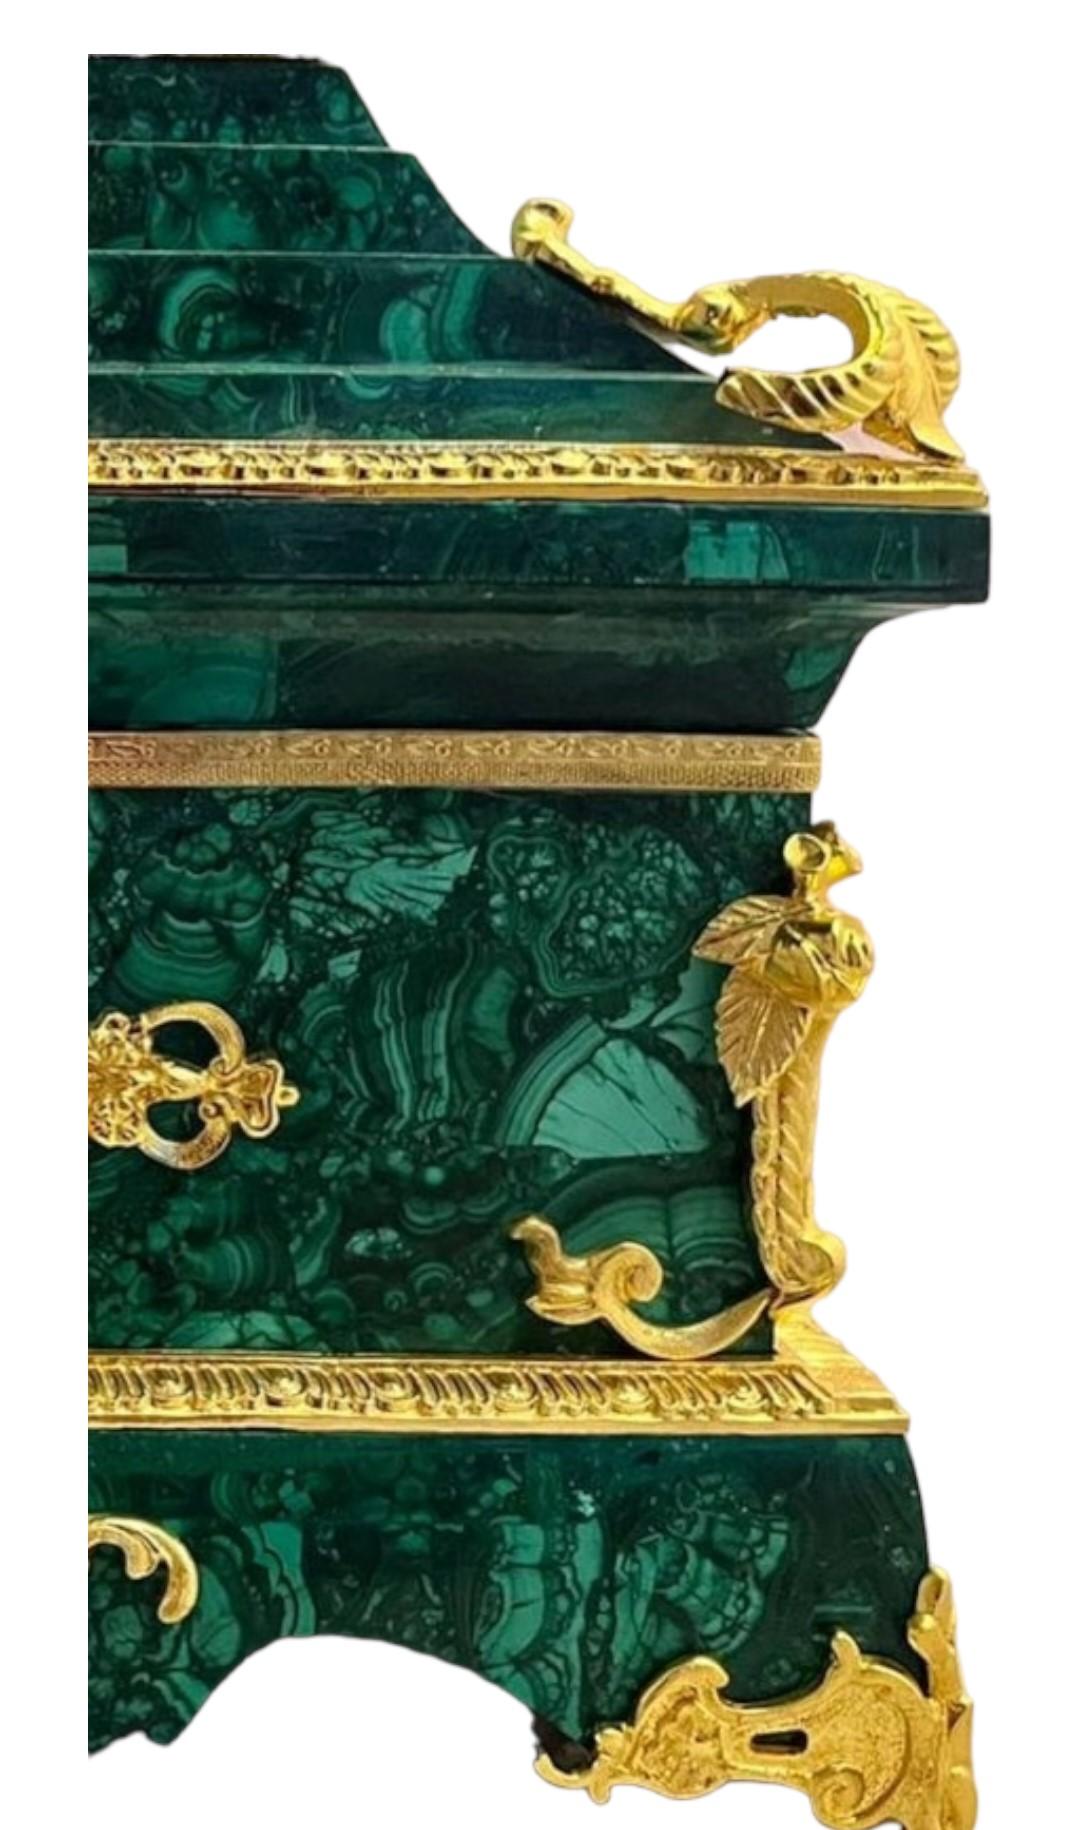 Très belle boîte montée en bronze doré de style Empire
Très belle qualité et très beau montage en bronze doré
Cette boîte, d'une hauteur de 40 cm, est vraiment magnifique.